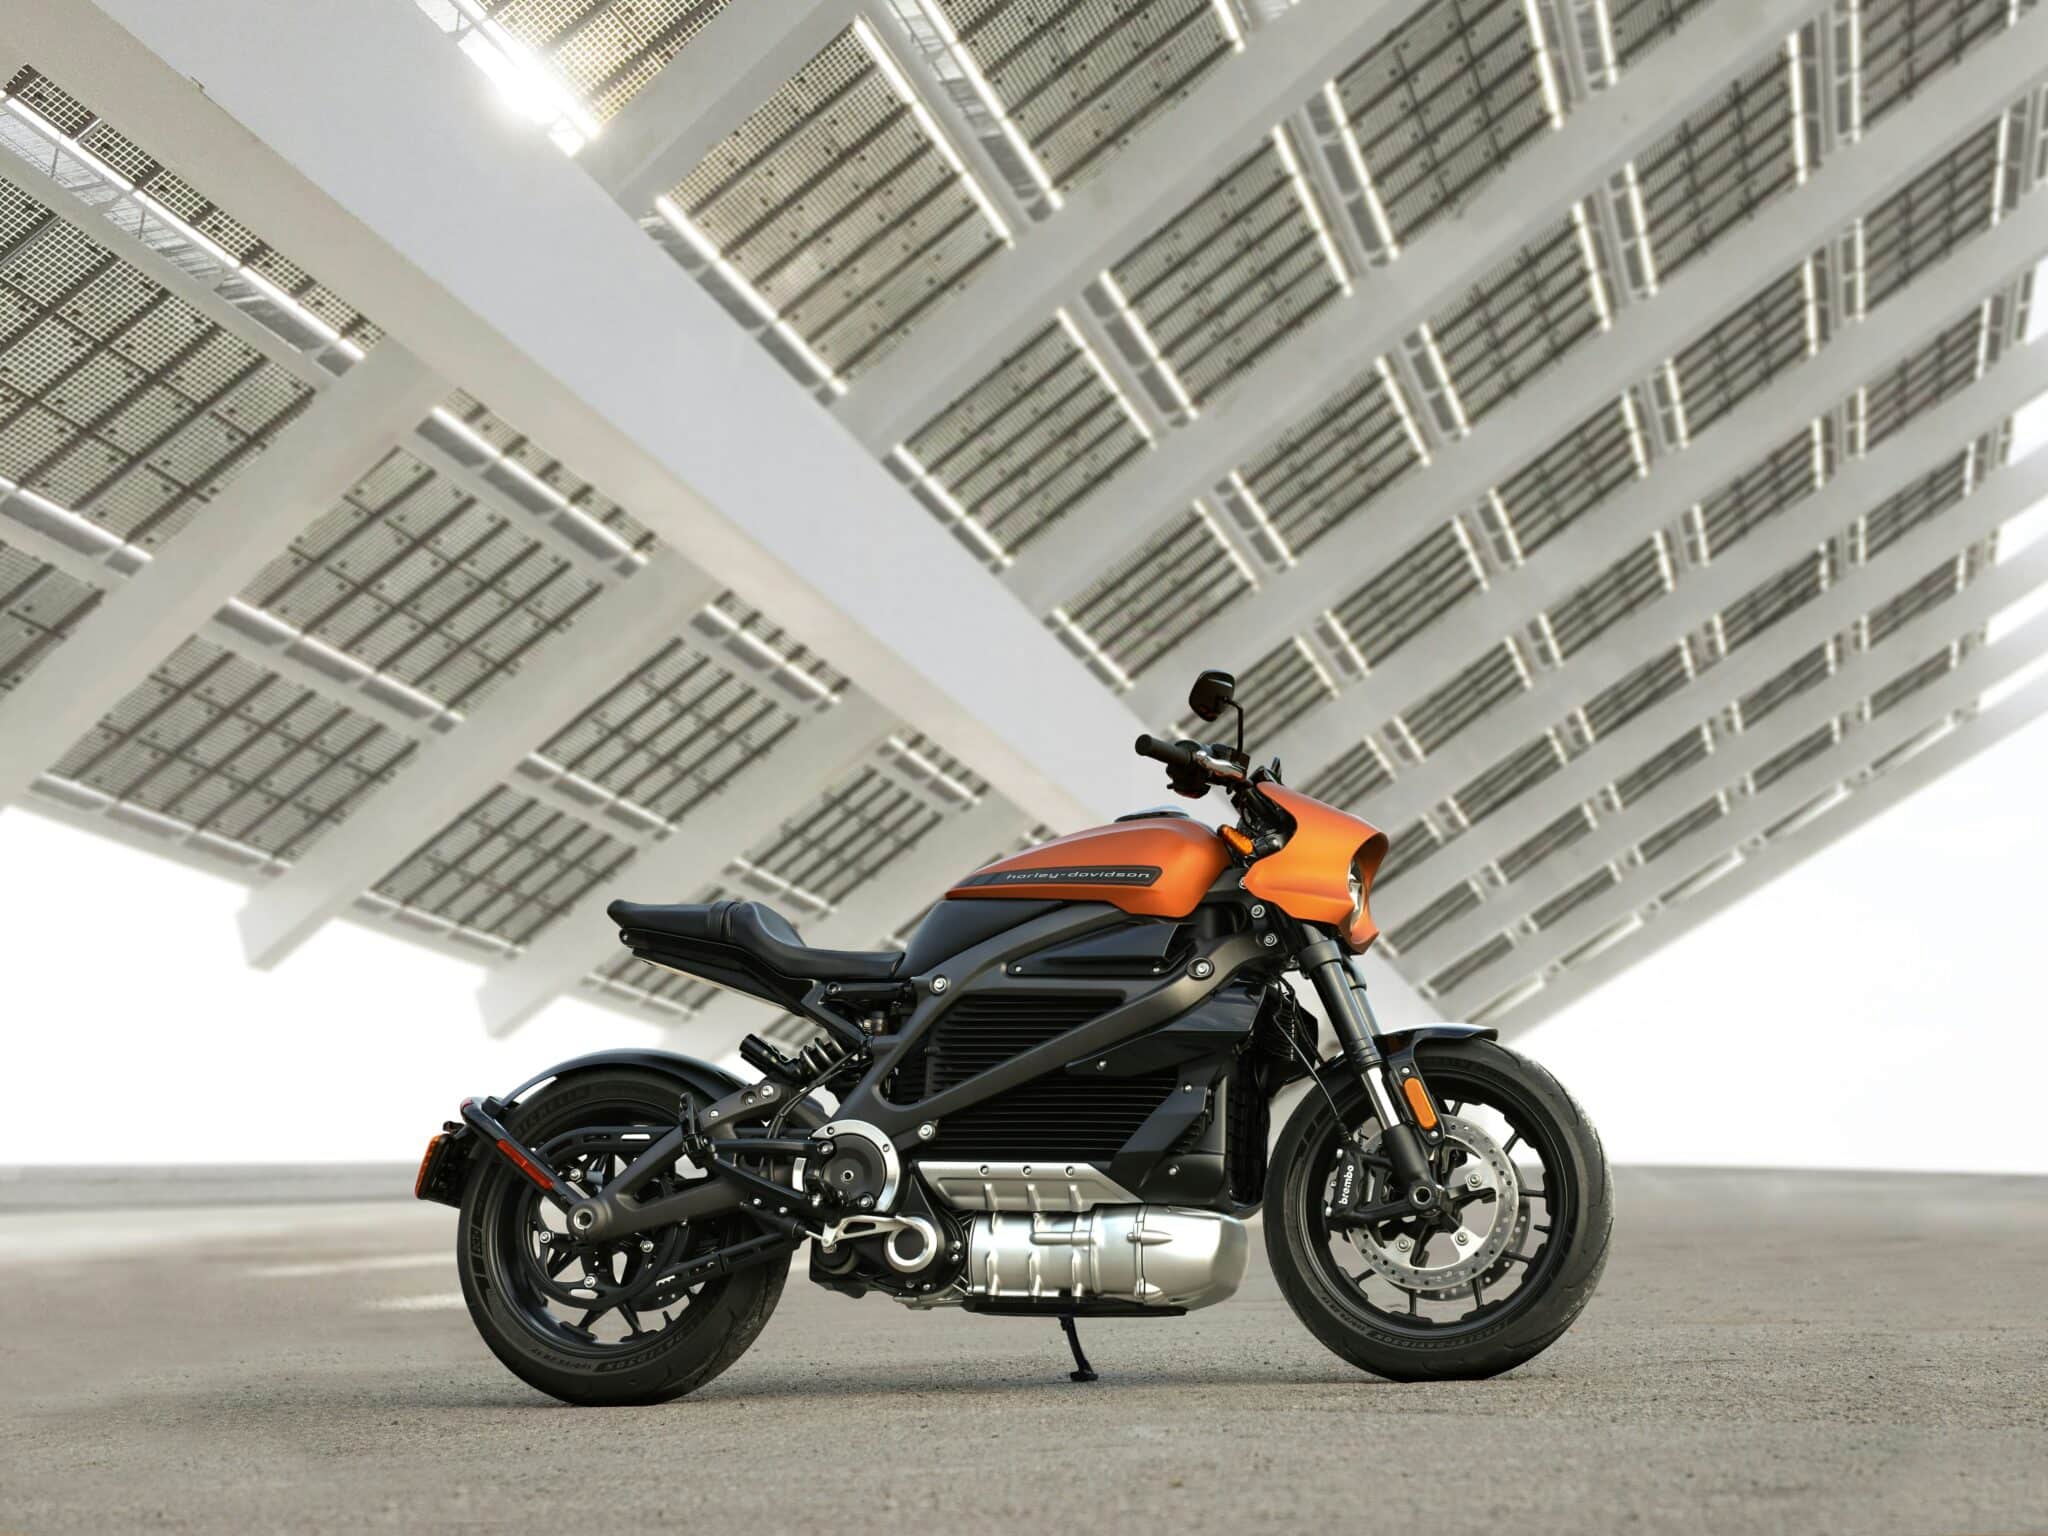 découvrez notre gamme de motos électriques, la combinaison parfaite entre performance, durabilité et responsabilité environnementale.